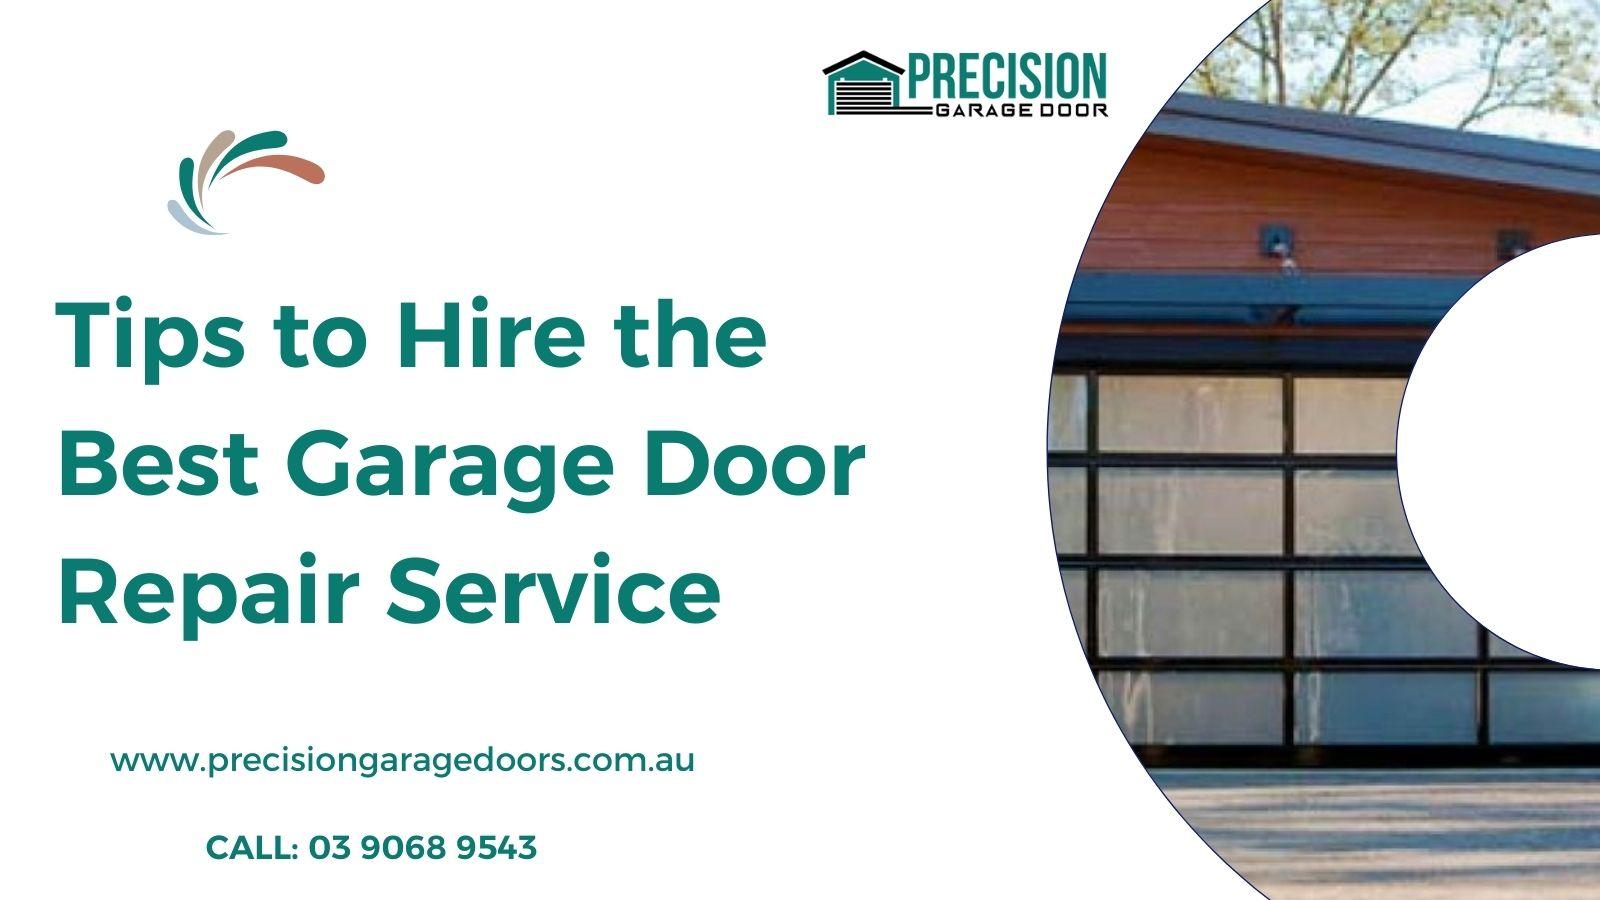 Tips to Hire the Best Garage Door Repair Service